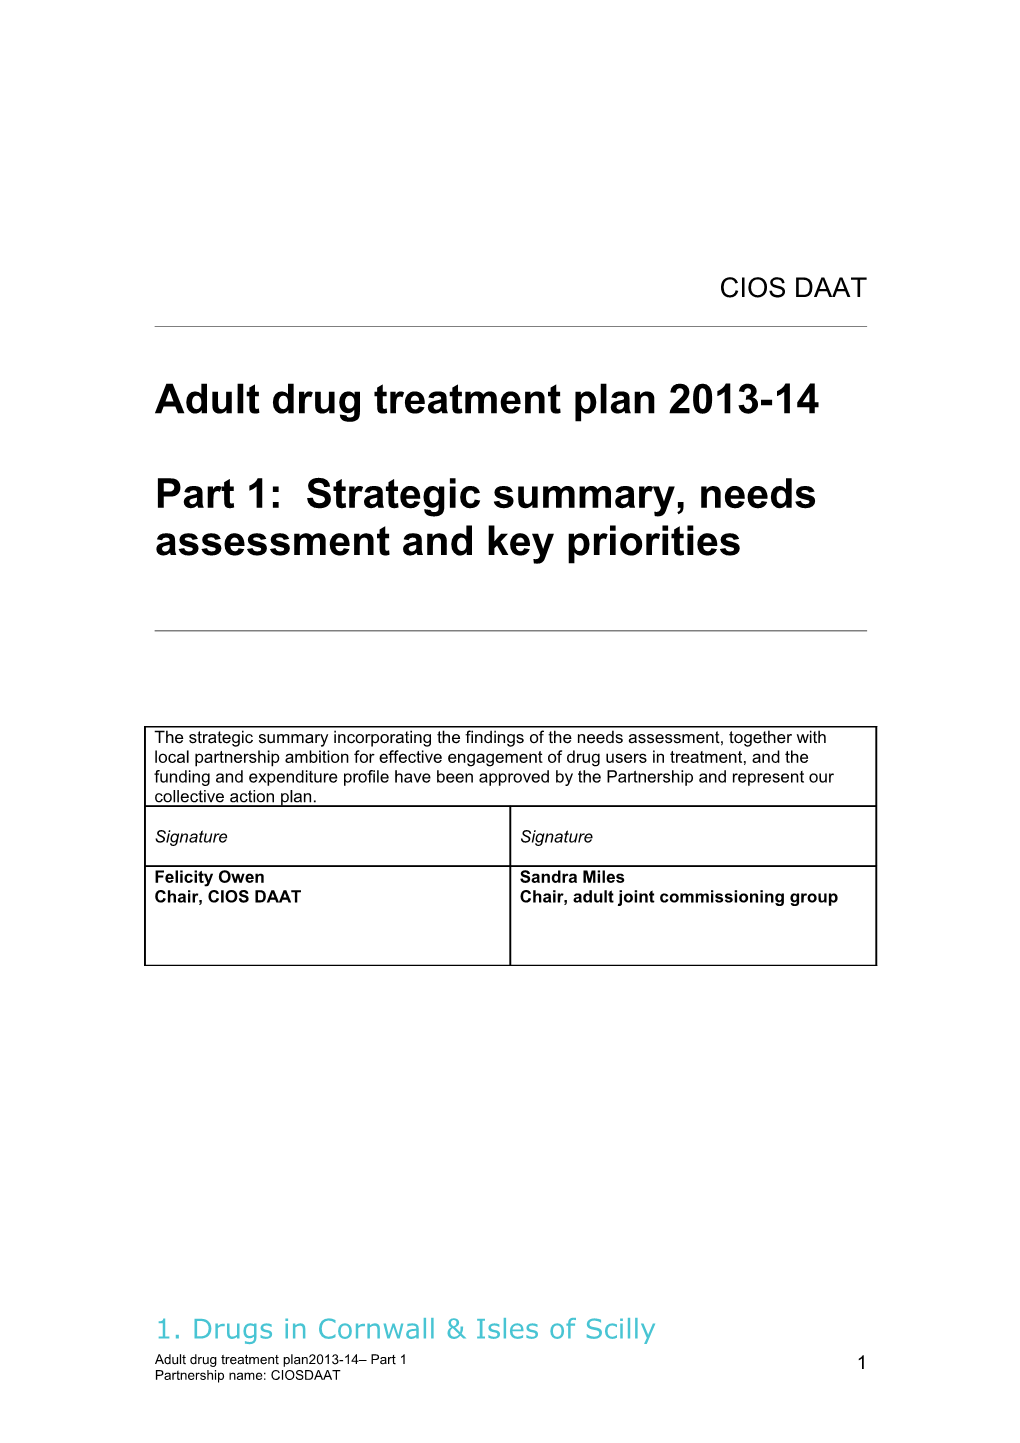 Adult Drug Treatment Plan 2013-14